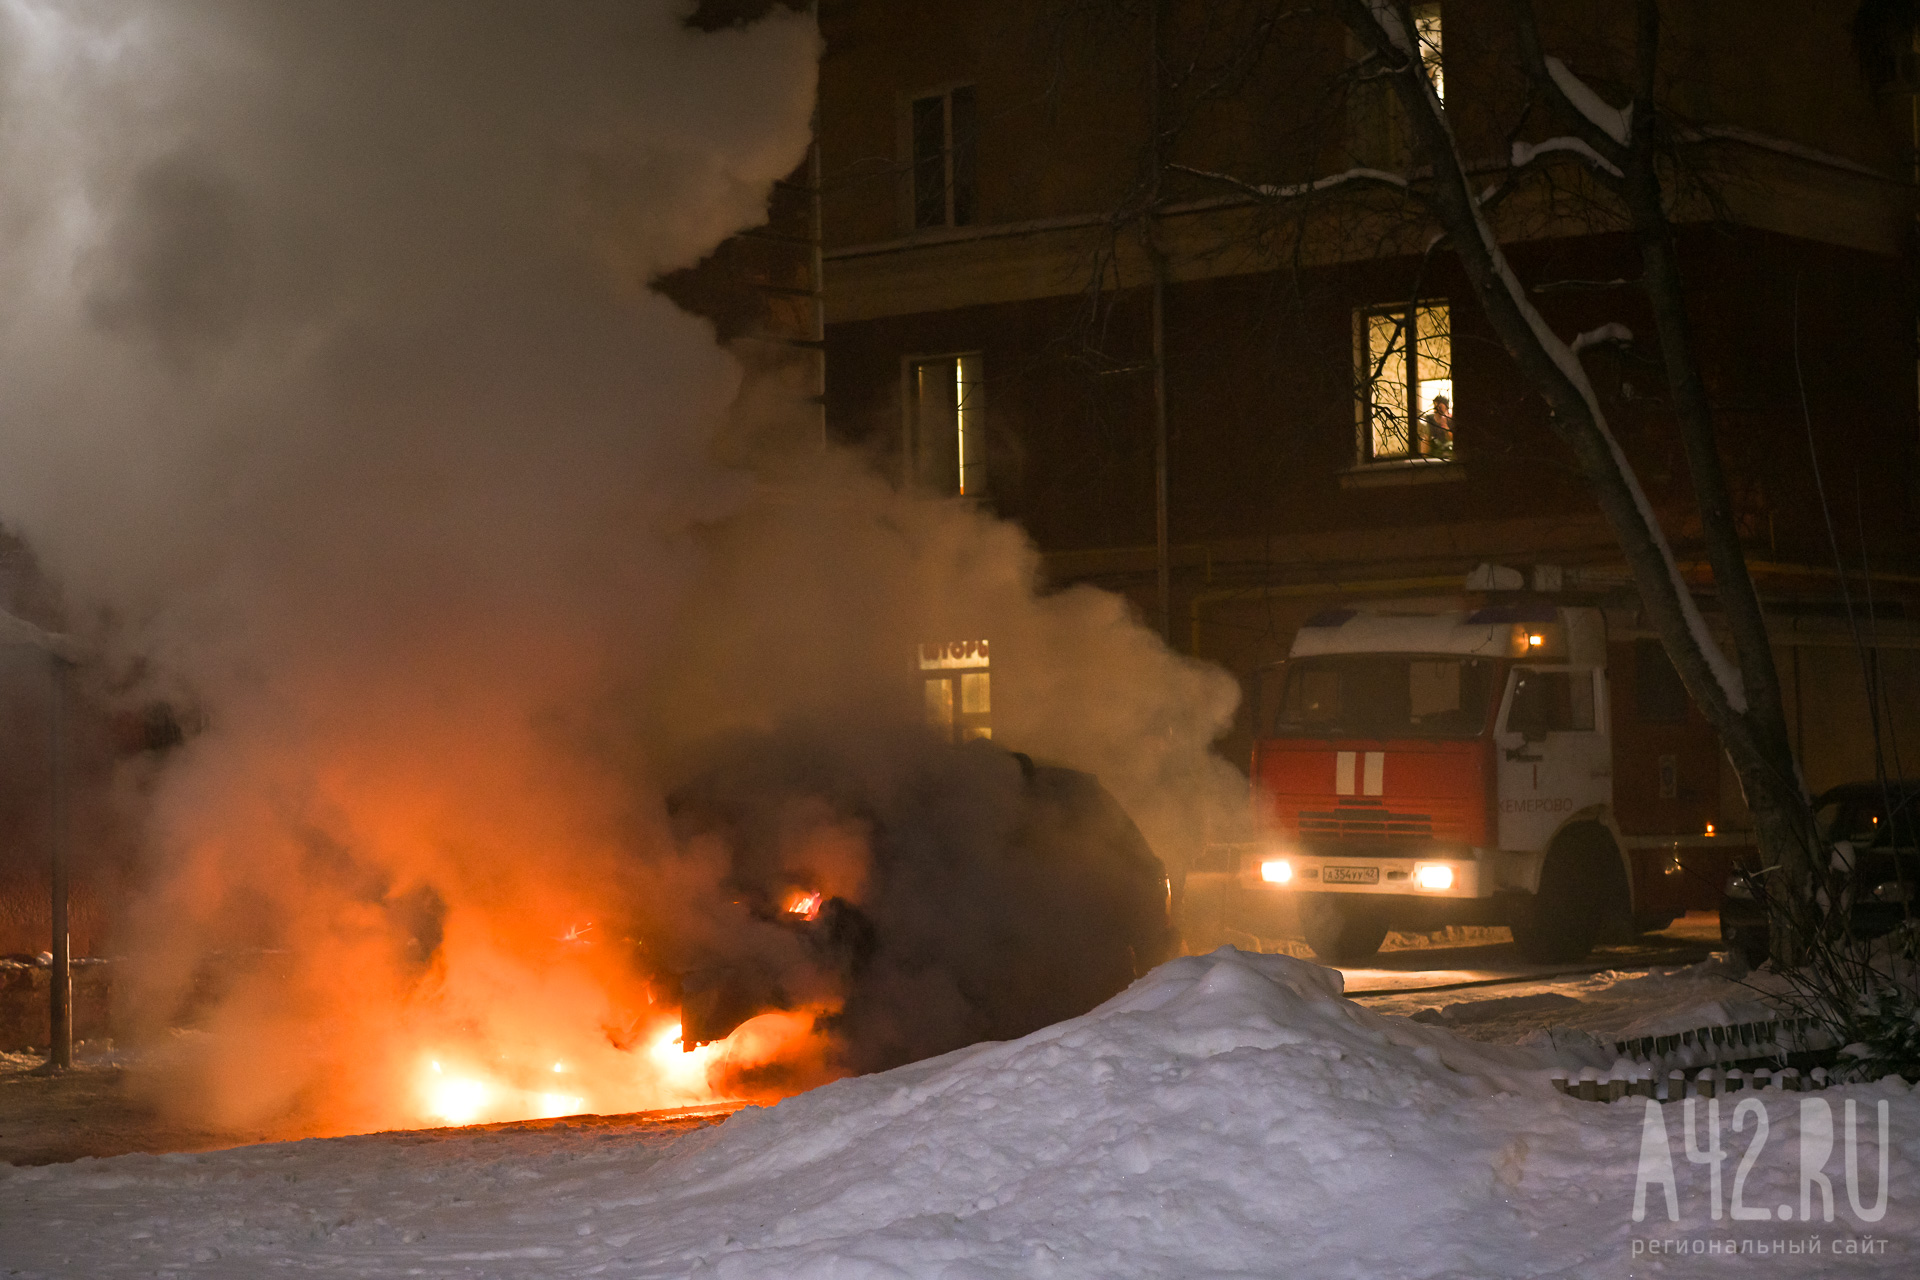 Ночью на проспекте Шахтёров в Кемерове загорелись два автомобиля 